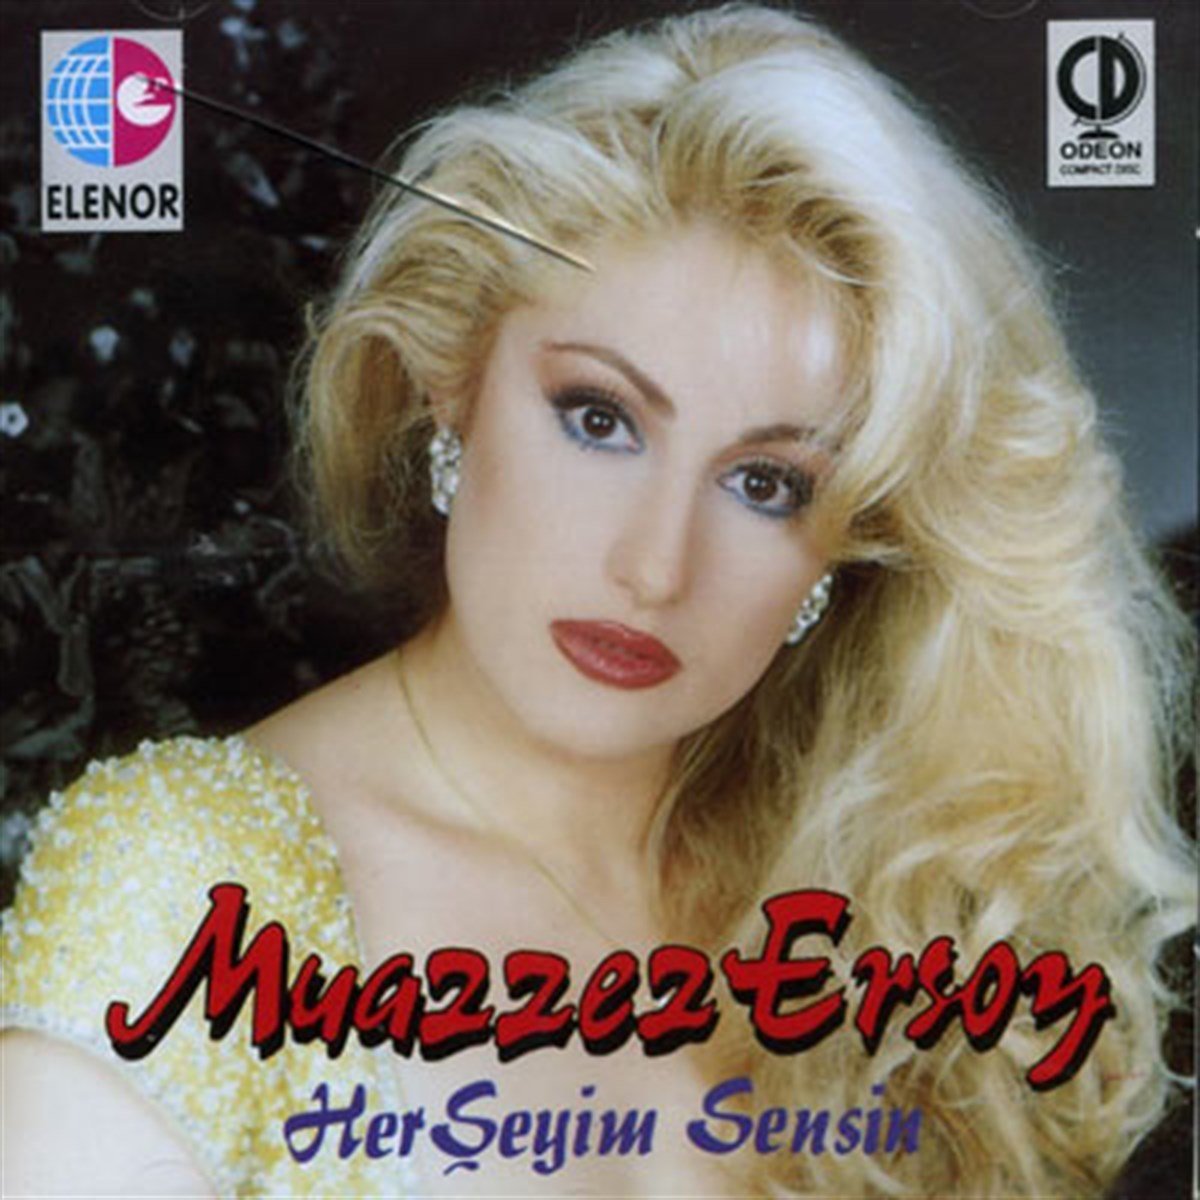 دانلود آلبوم قديمي و نوستالژي Muazzez Ersoy بنام [۱۹۹۲] Herseyim Sensin